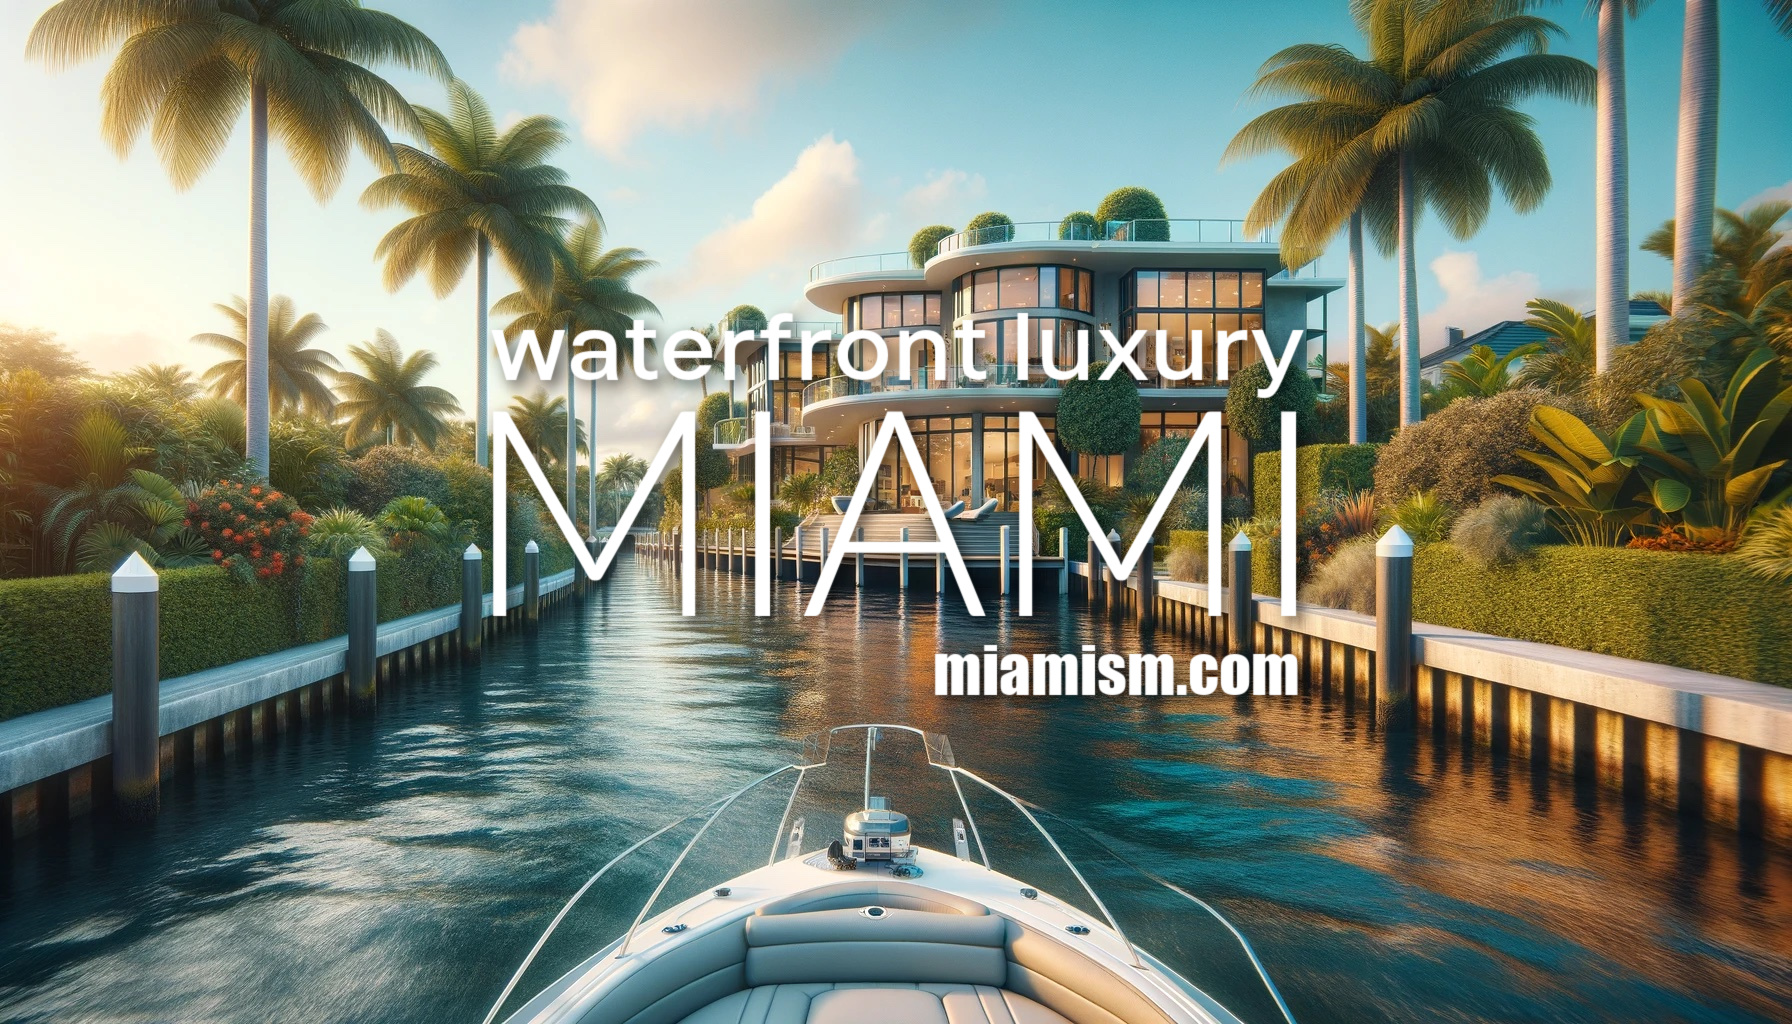 Miami waterfront luxury real estate